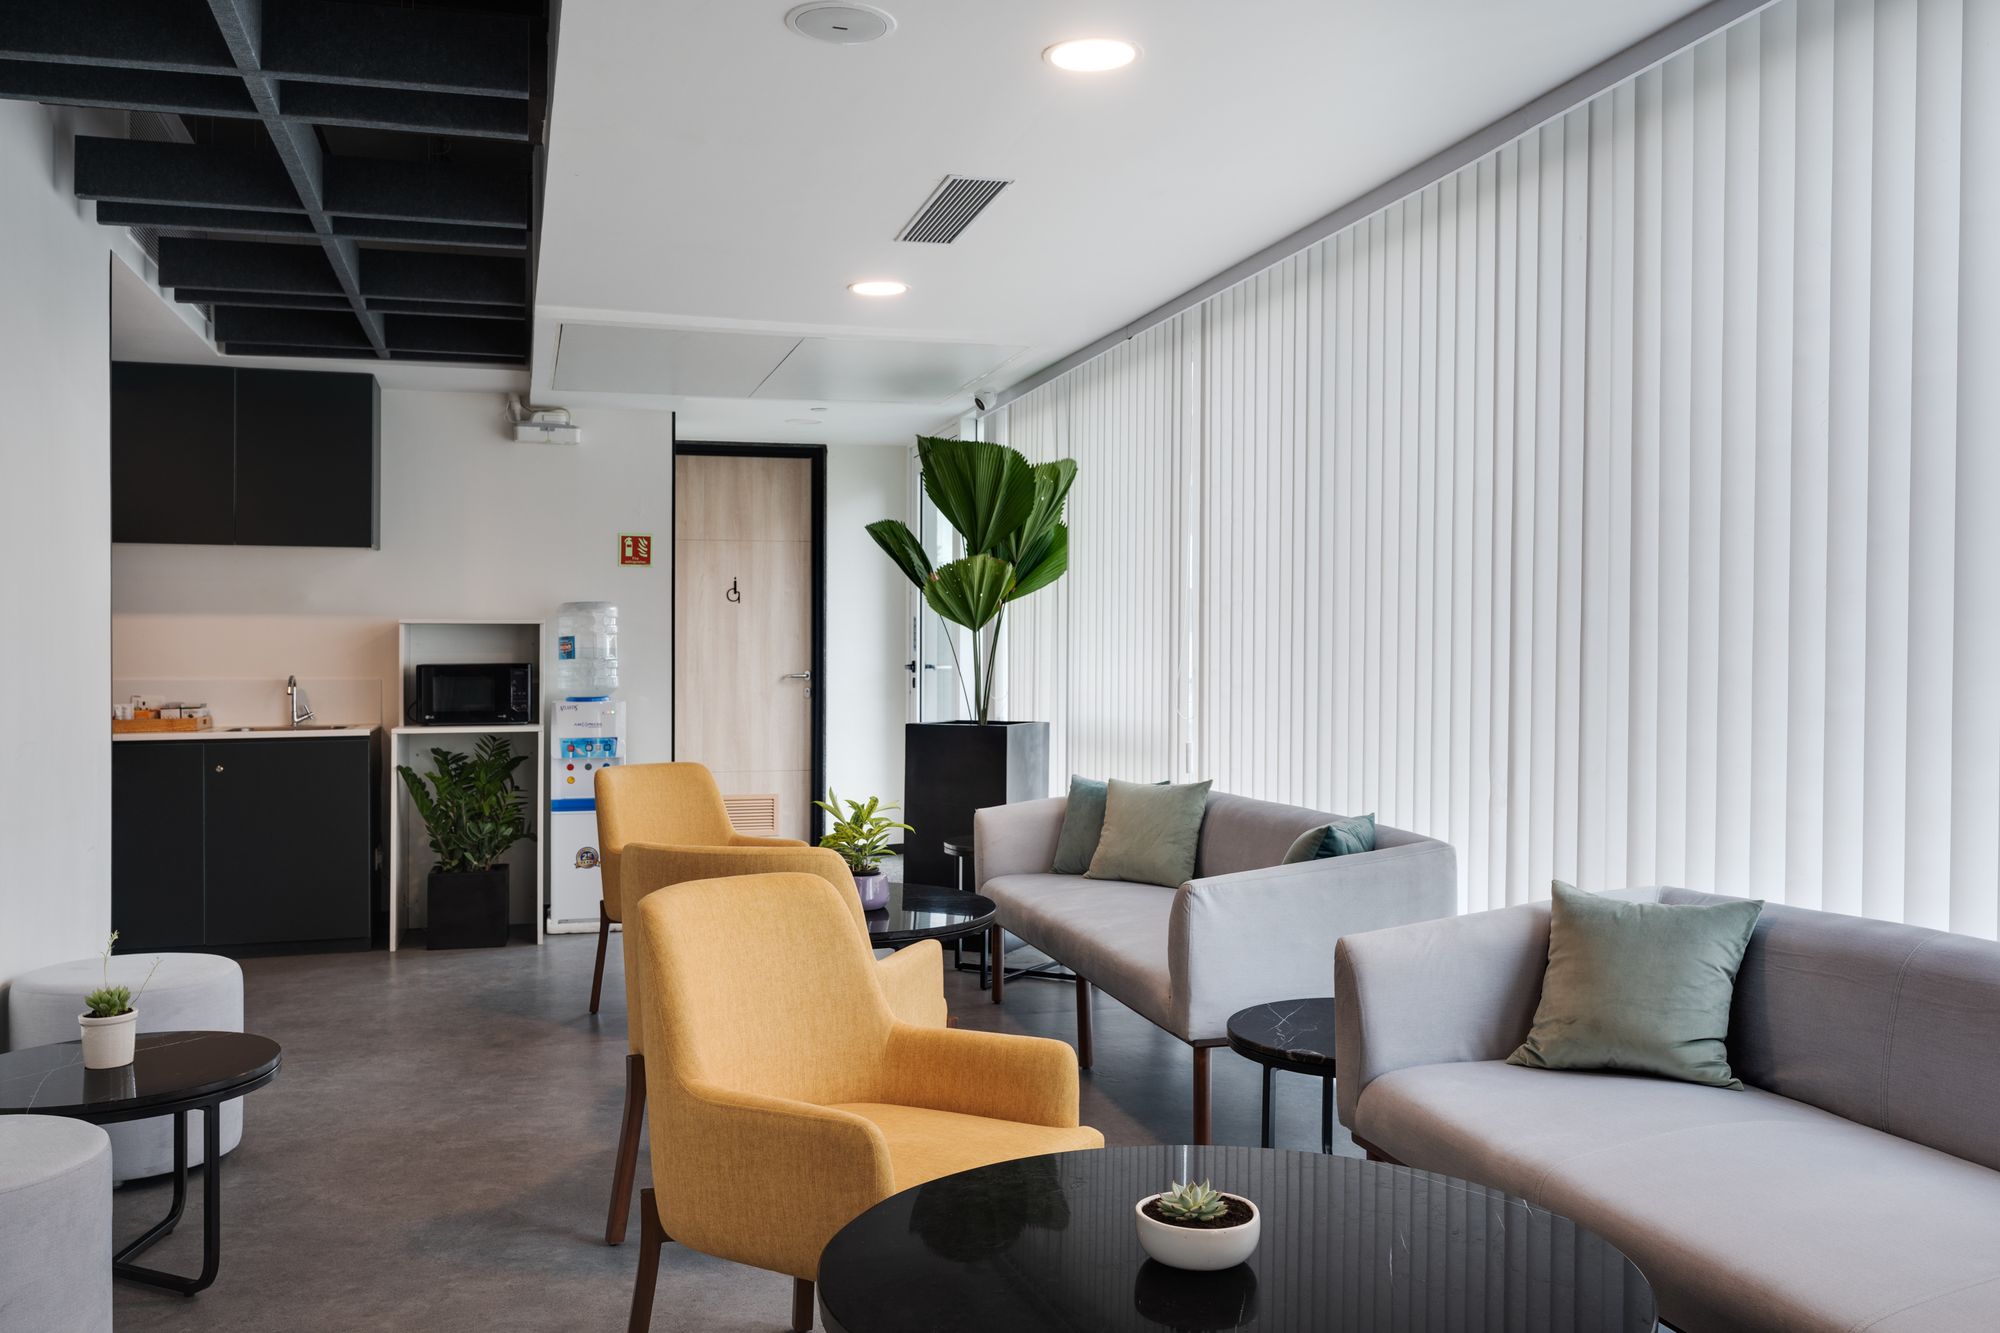 图片[11]|Laerdal医疗办公室-班加罗尔|ART-Arrakis | 建筑室内设计的创新与灵感